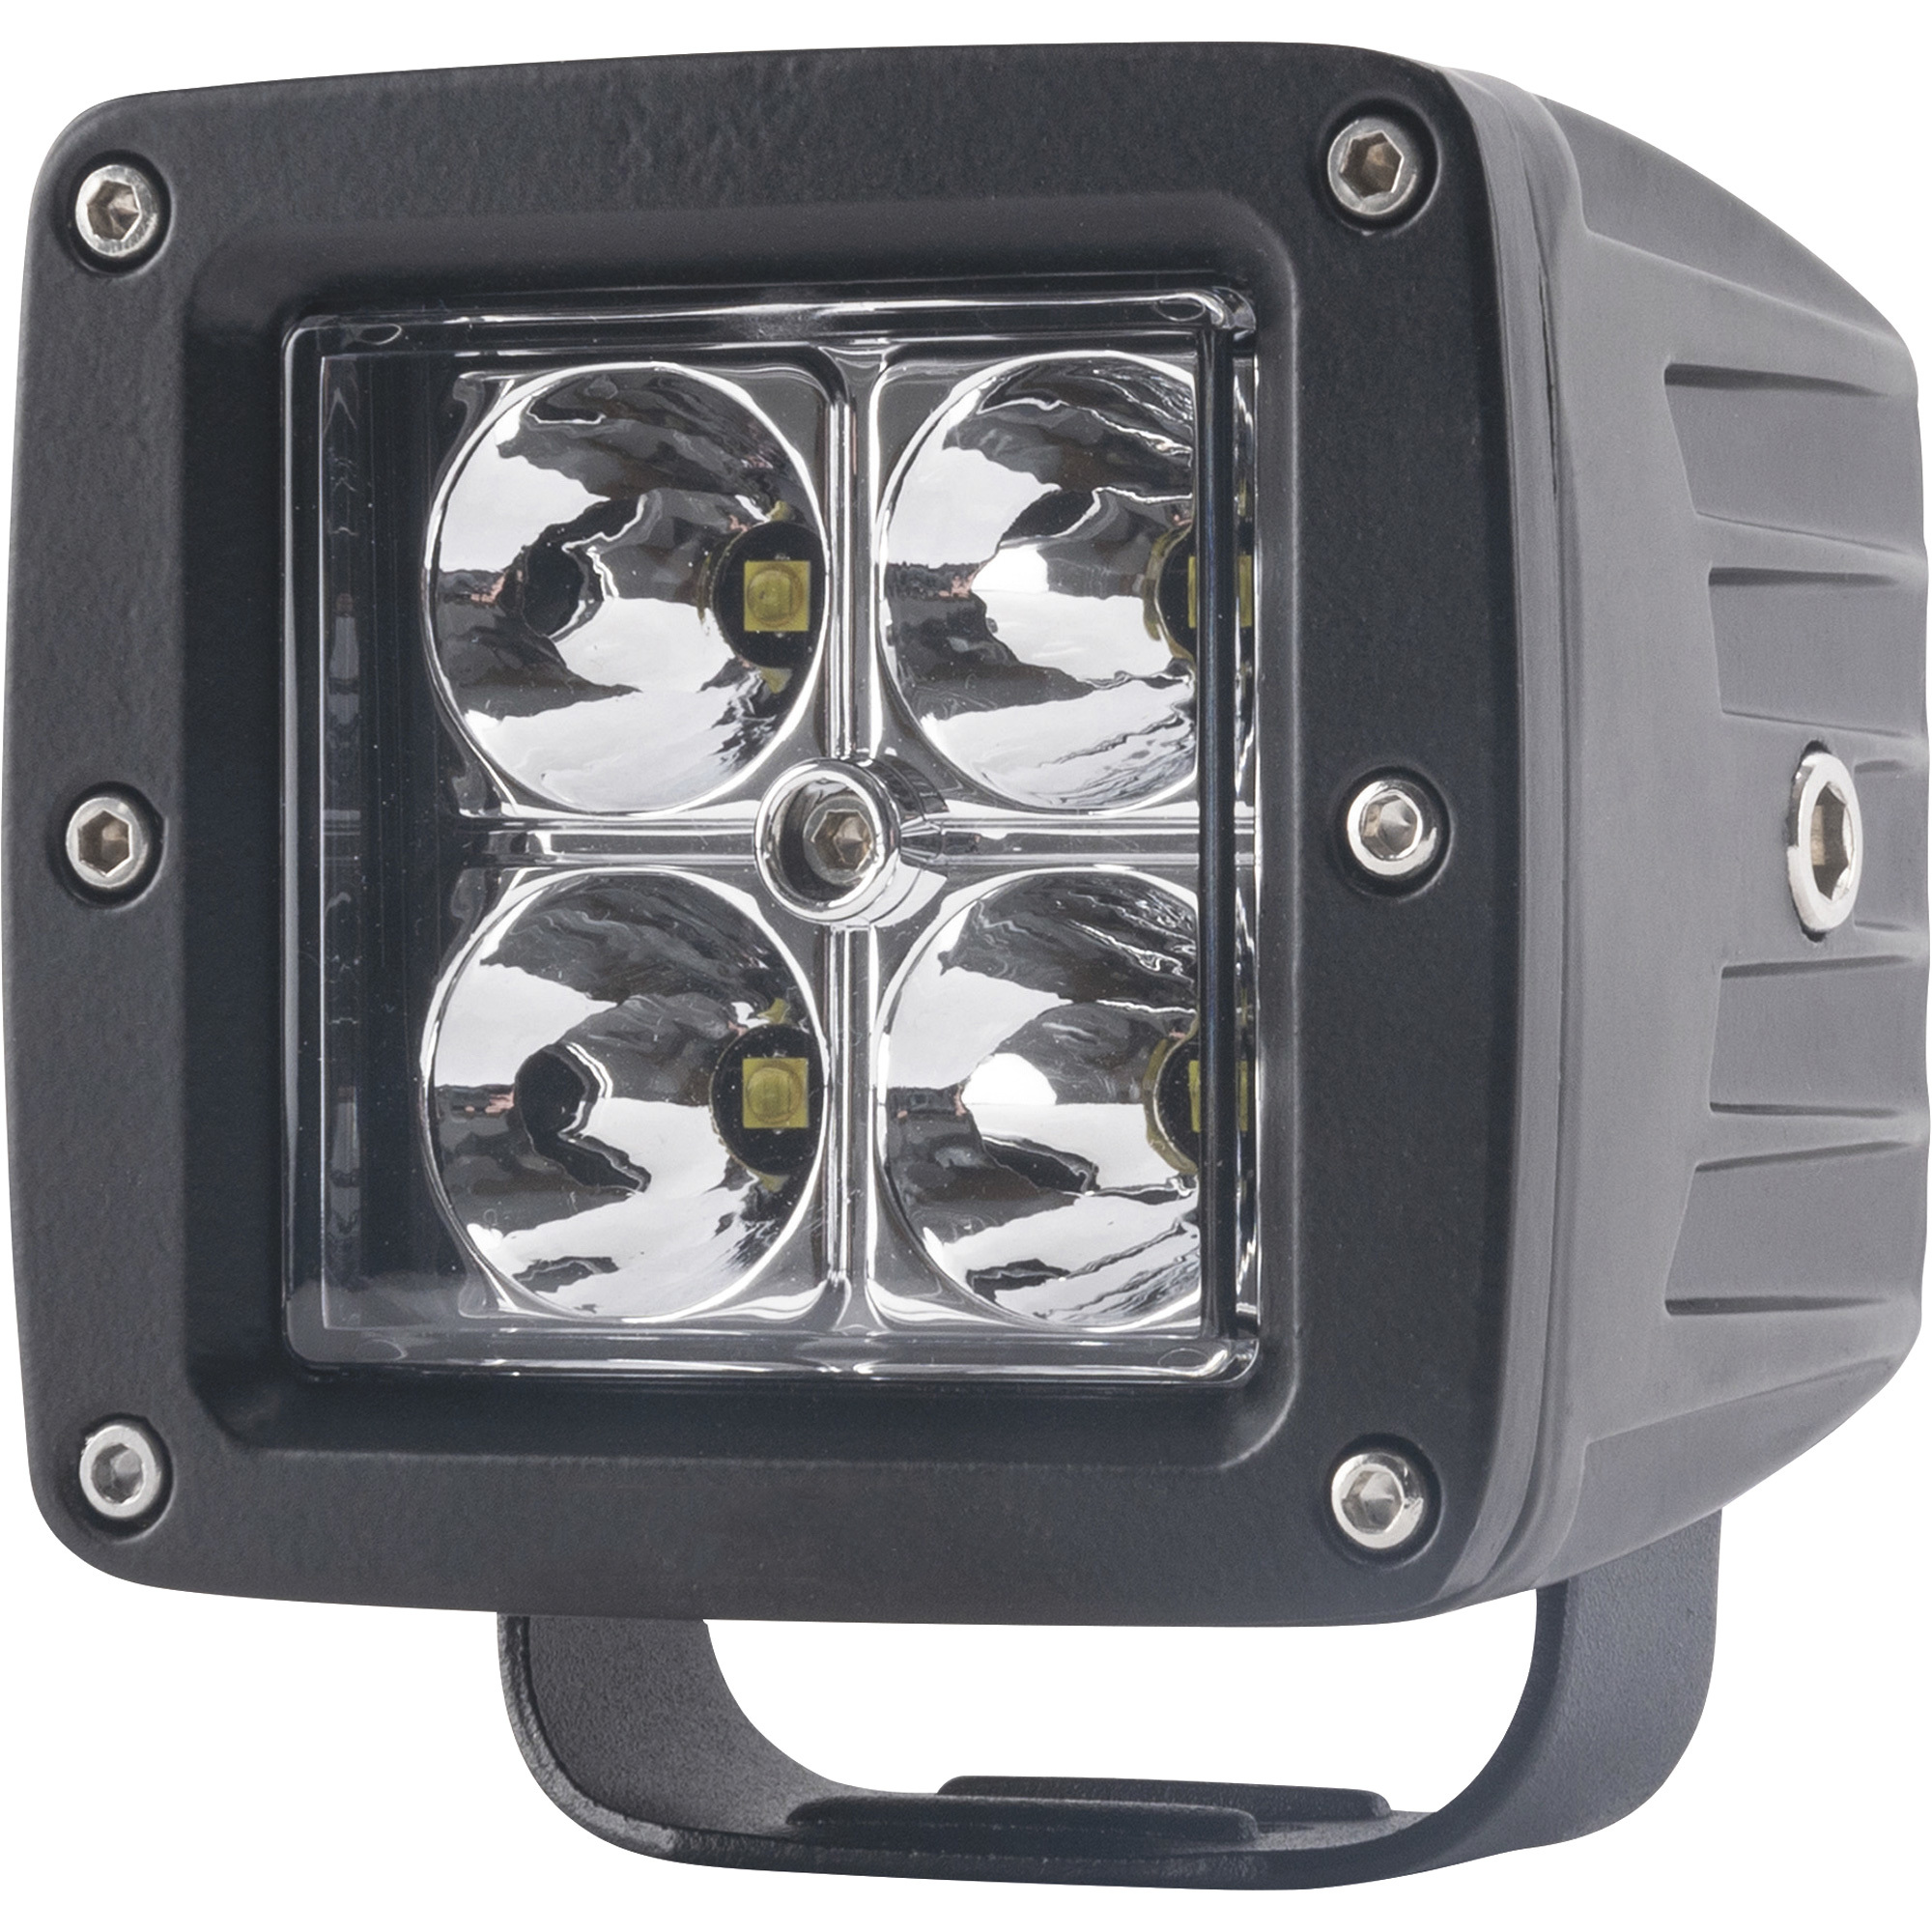 Blazer 12/24V LED Cube Spot Light â 1720 Lumens, 4 LEDs, Model C3073K